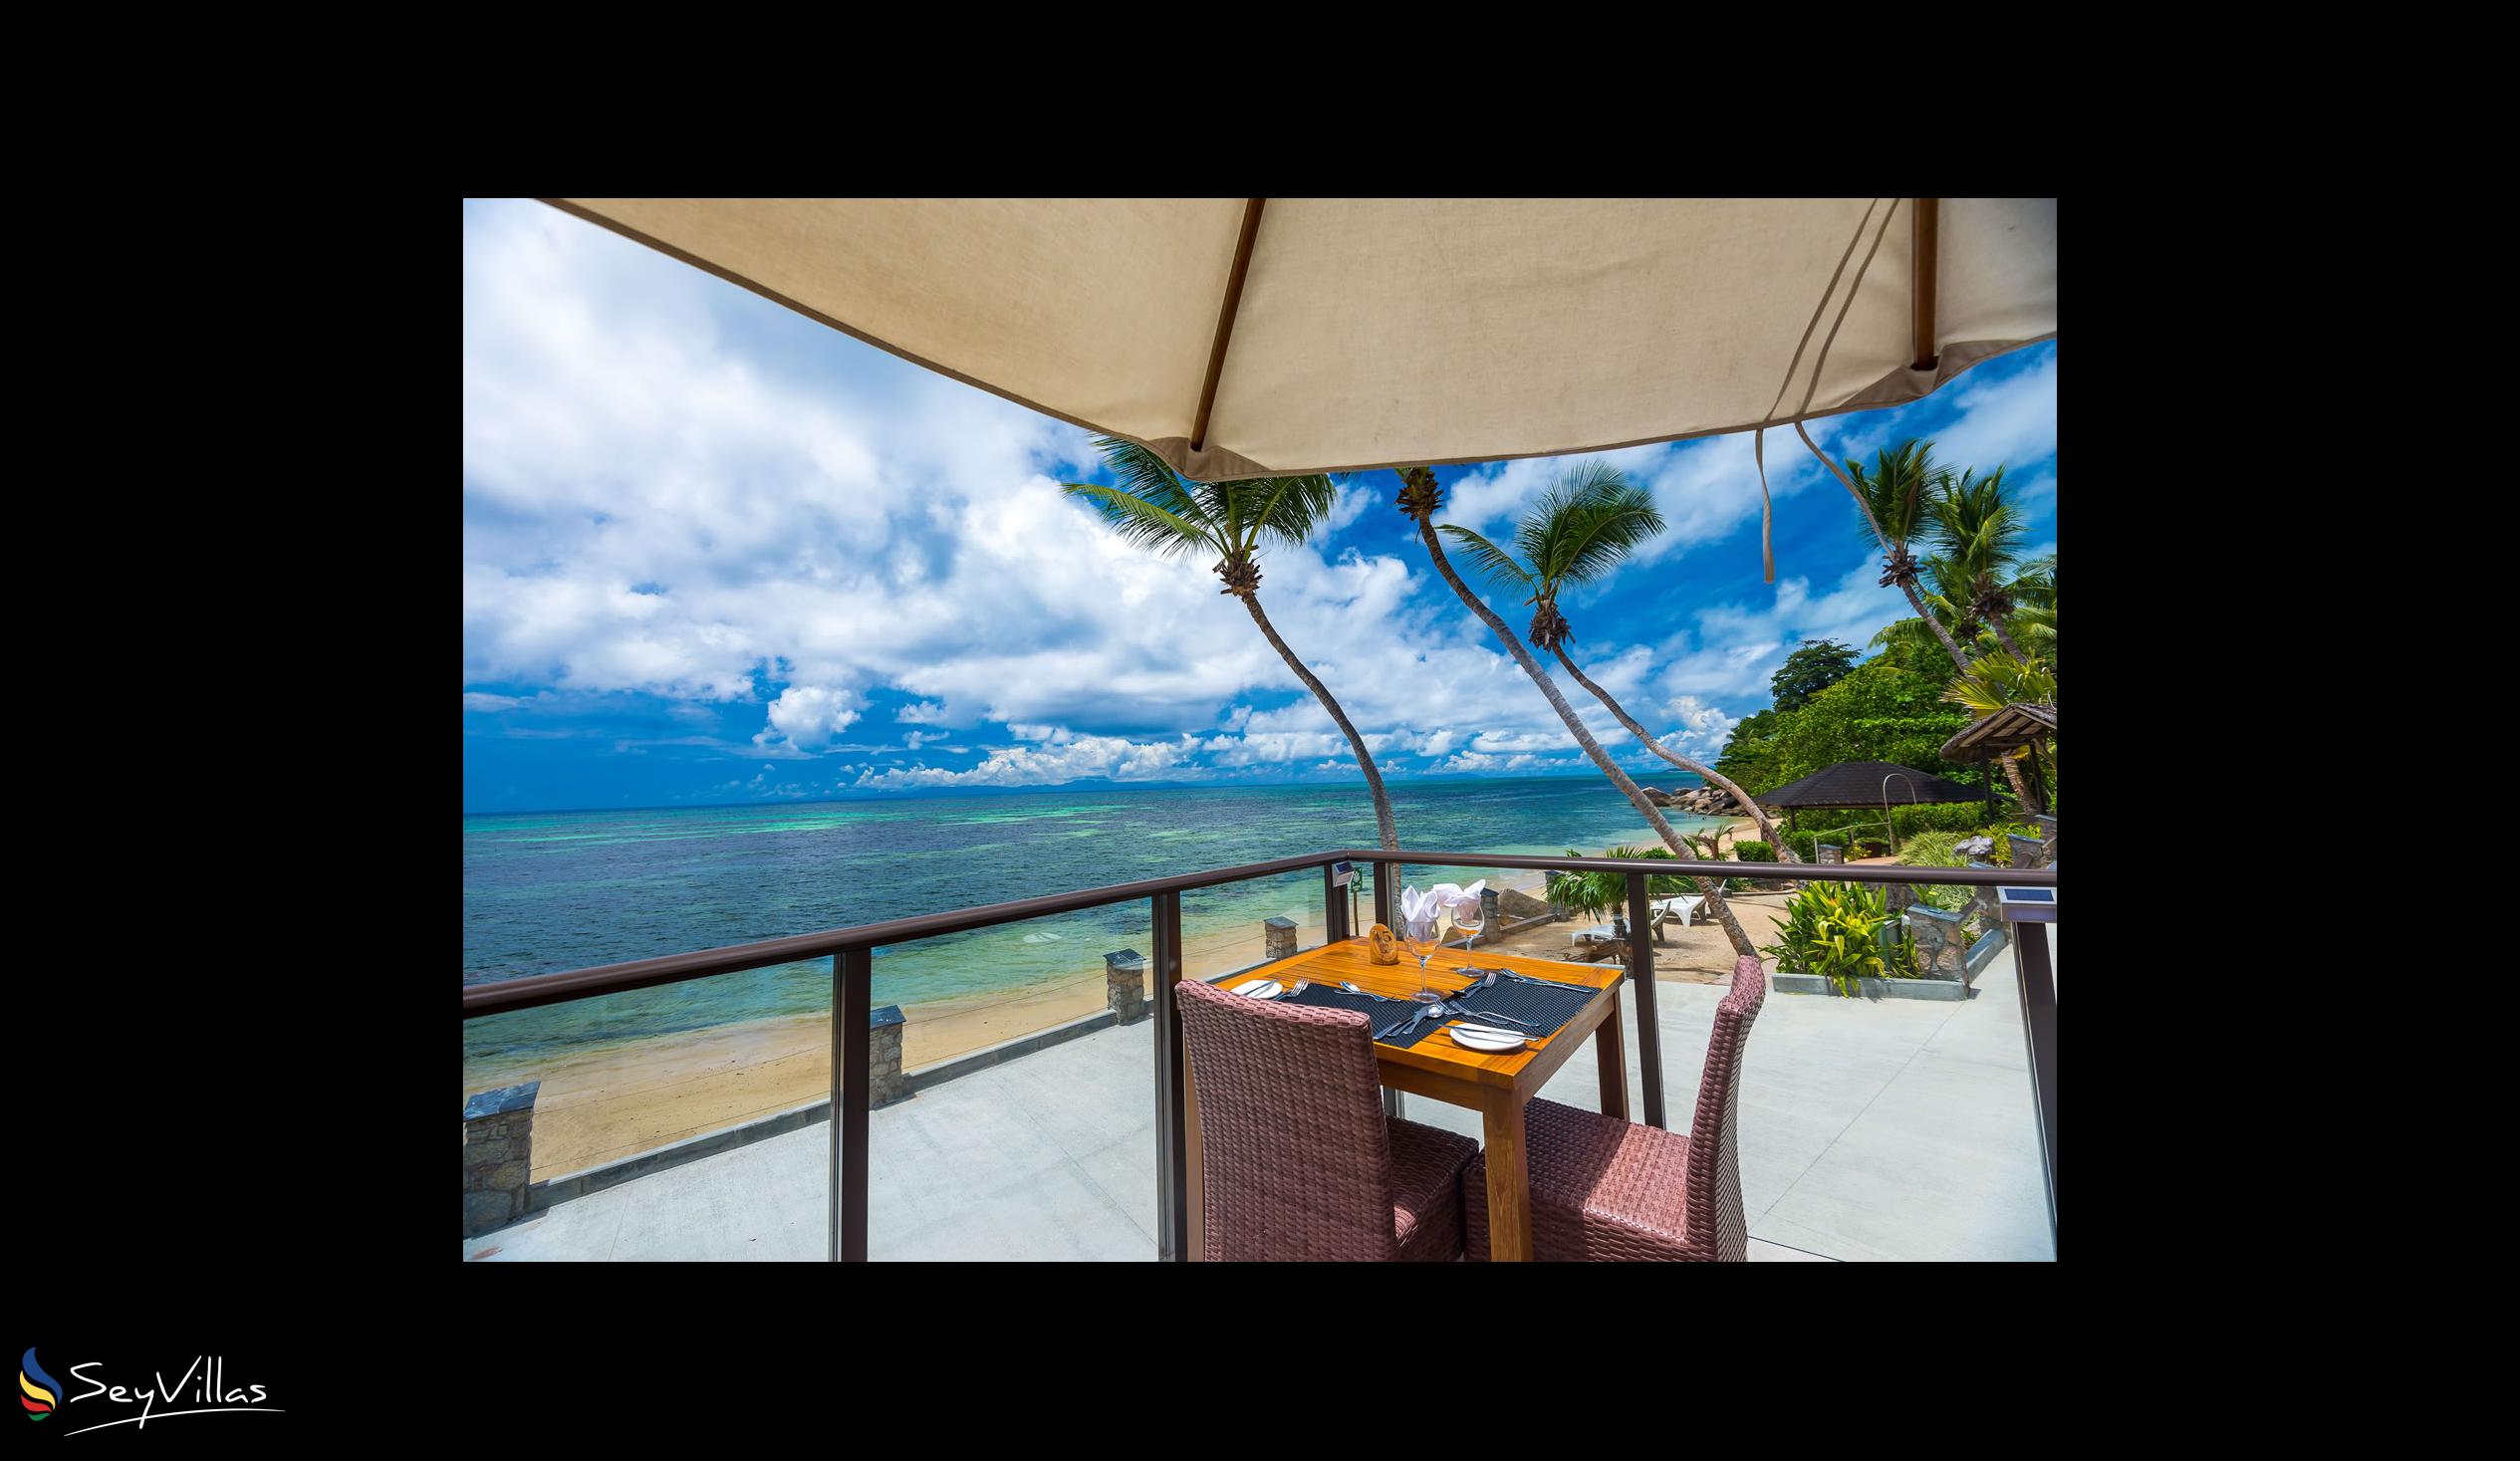 Foto 27: Coco de Mer & Black Parrot Suites - Aussenbereich - Praslin (Seychellen)